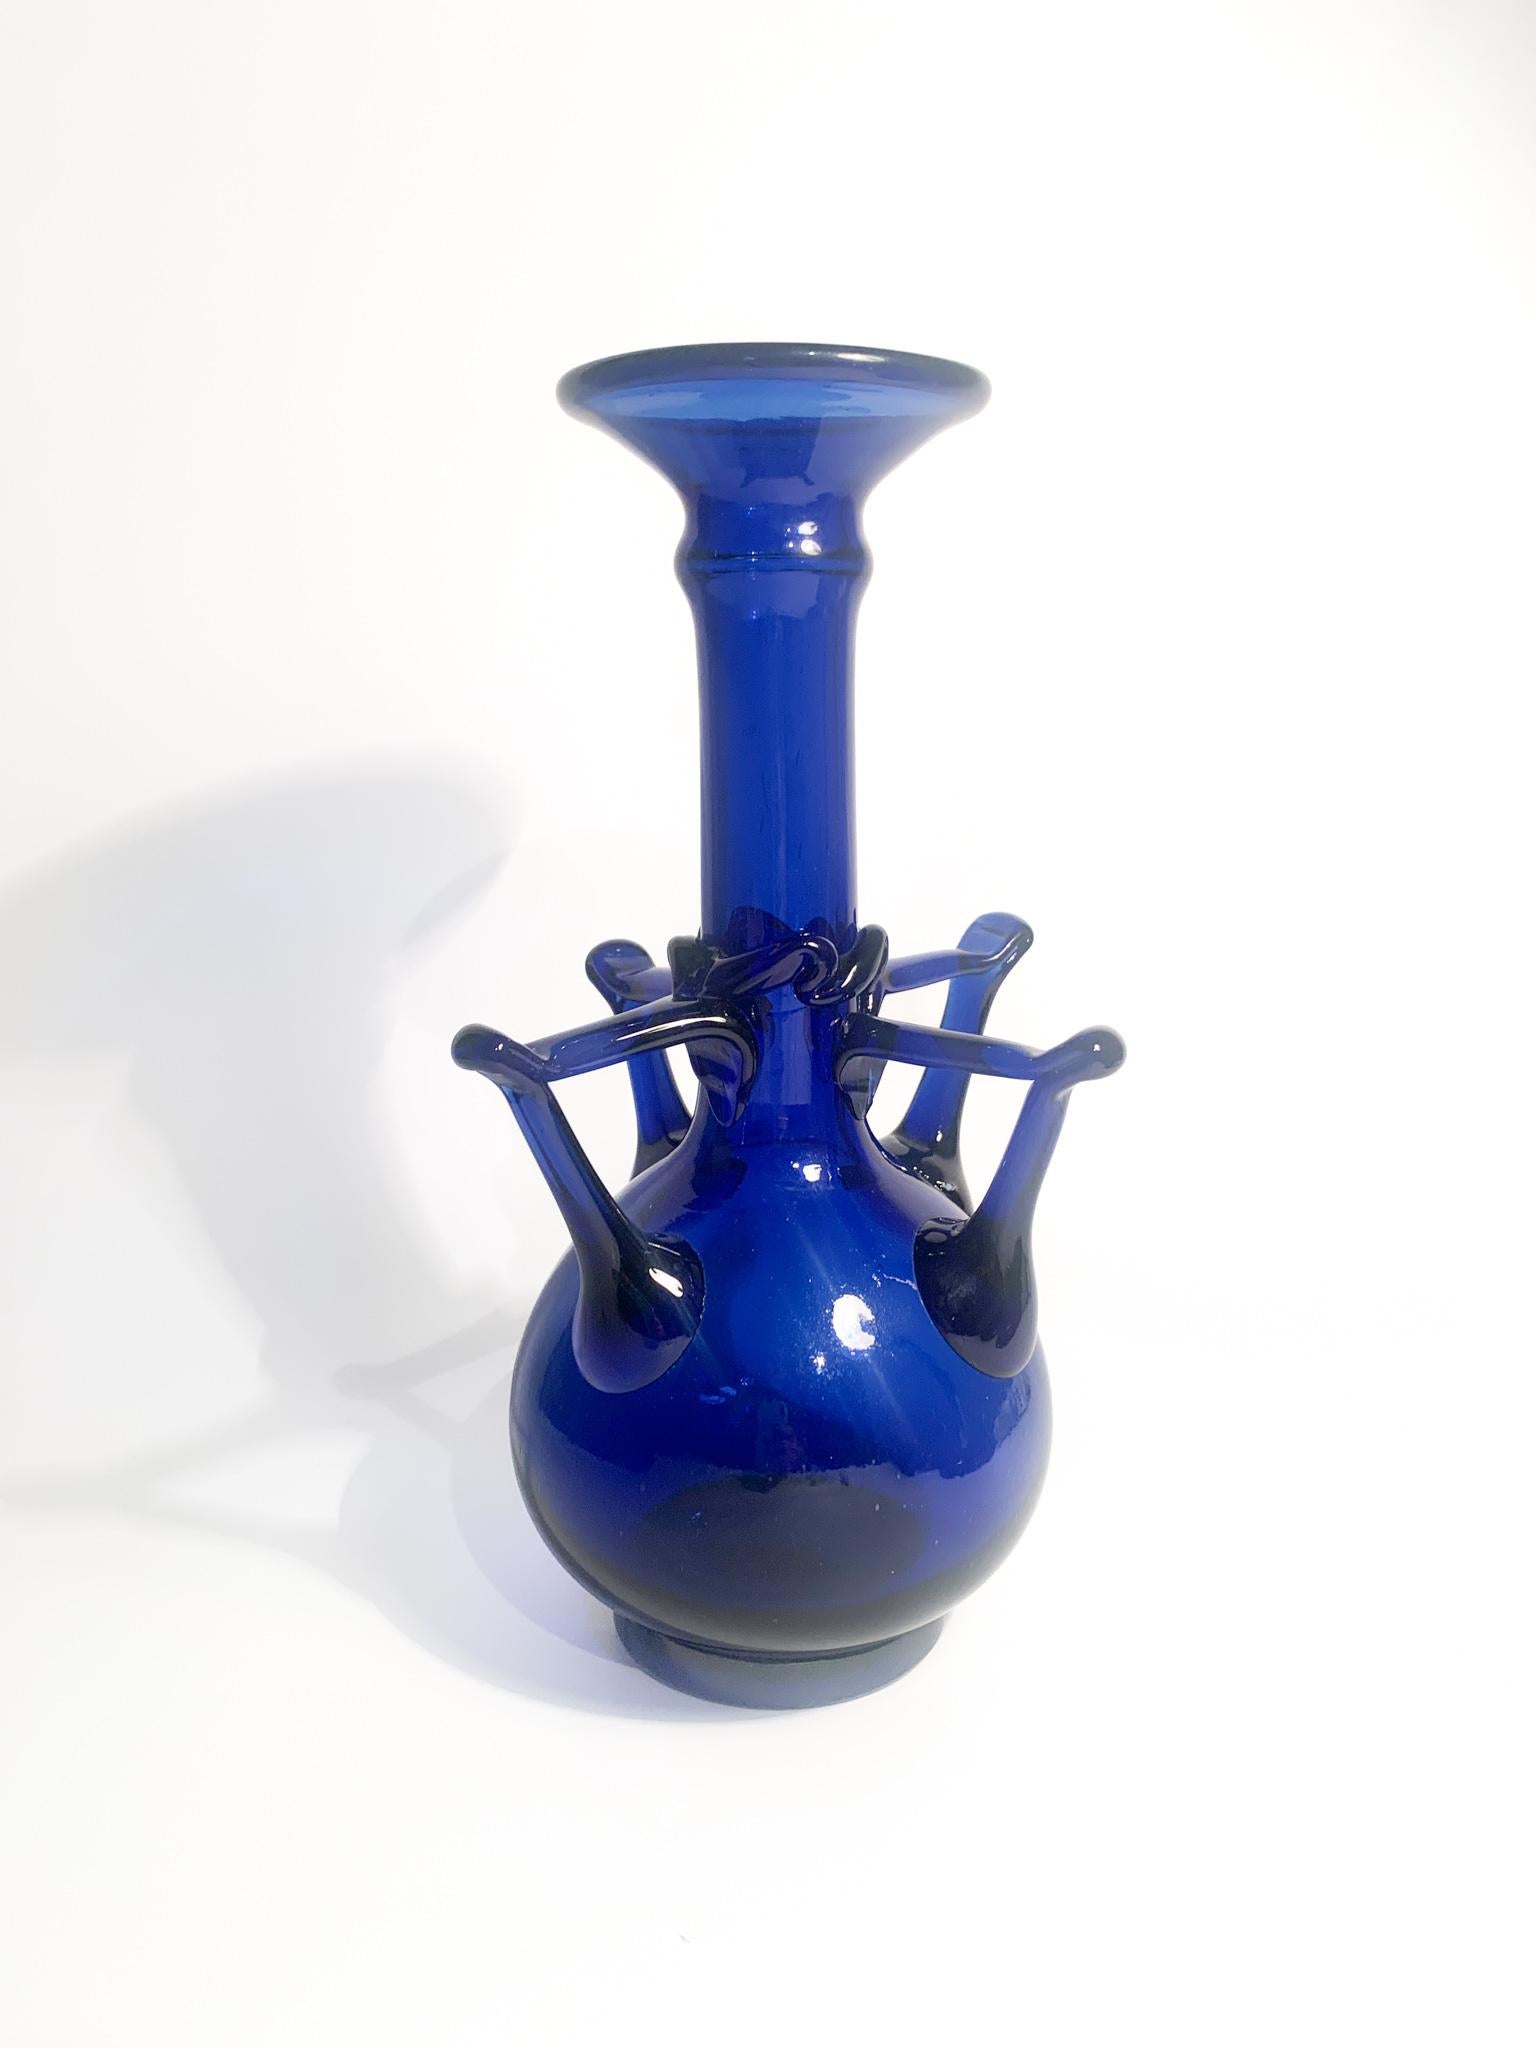 Vase en verre bleu de Murano, dont la création est attribuée aux frères Toso dans les années 1940.

Ø cm 16 h cm 28,5

Barovier&Toso est une verrerie, connue pour ses collections artisanales de verre décoratif de Murano au XXe siècle. Les